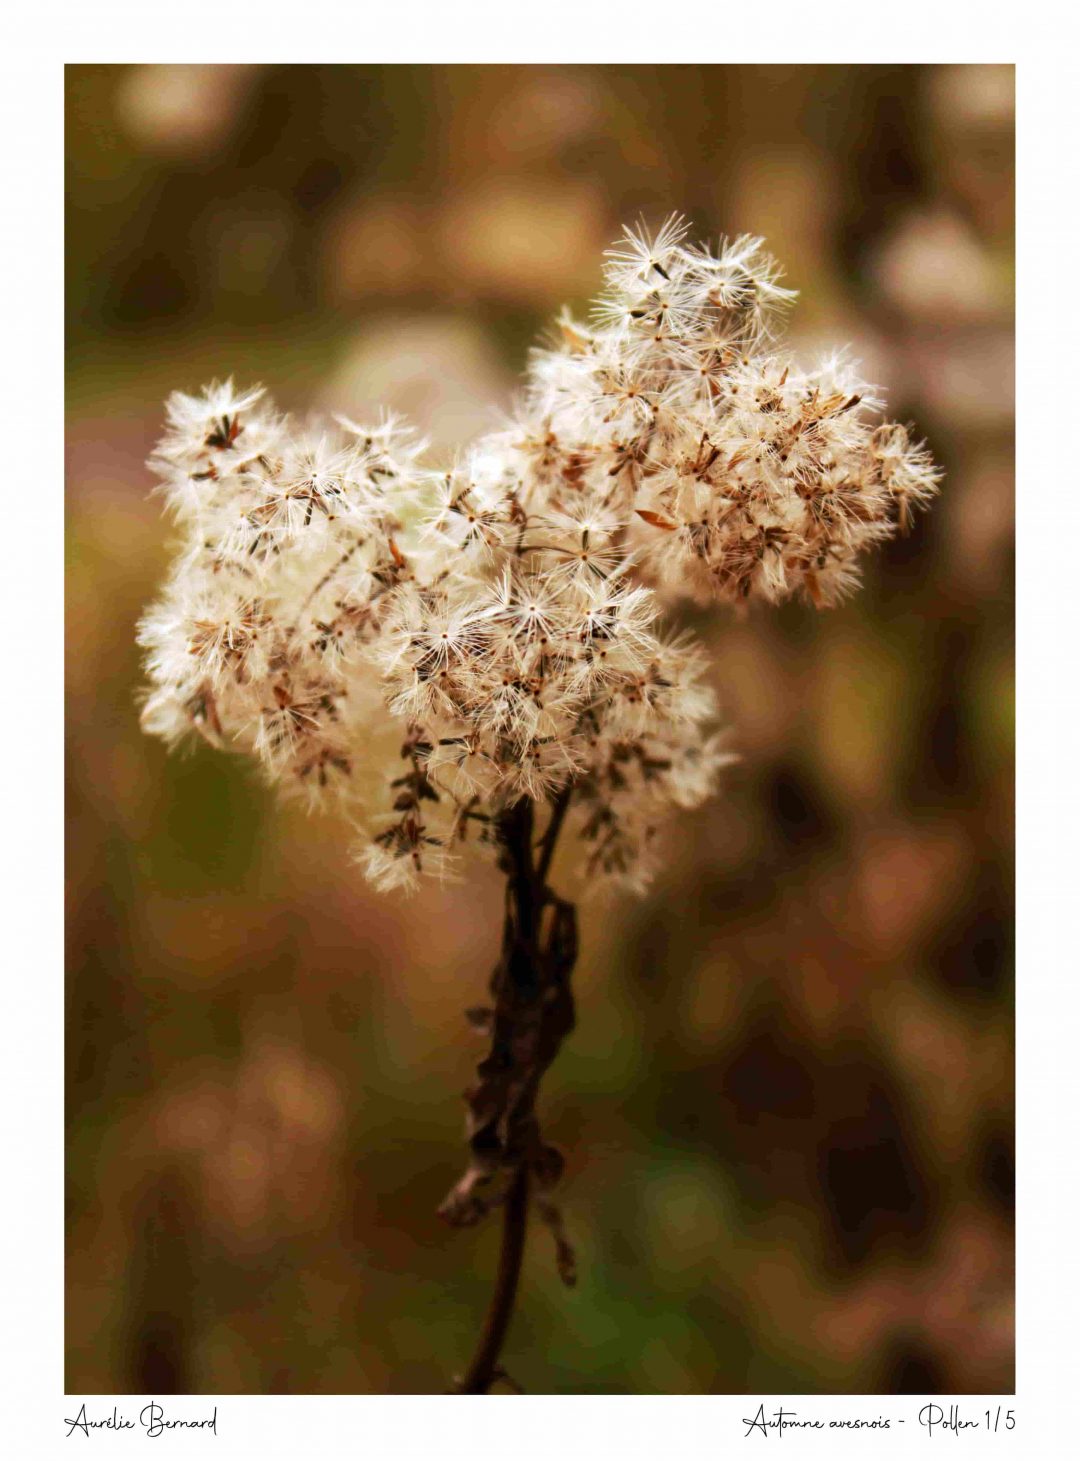 Photographie intitulée "Pollen" de la série "Automne avesnois"